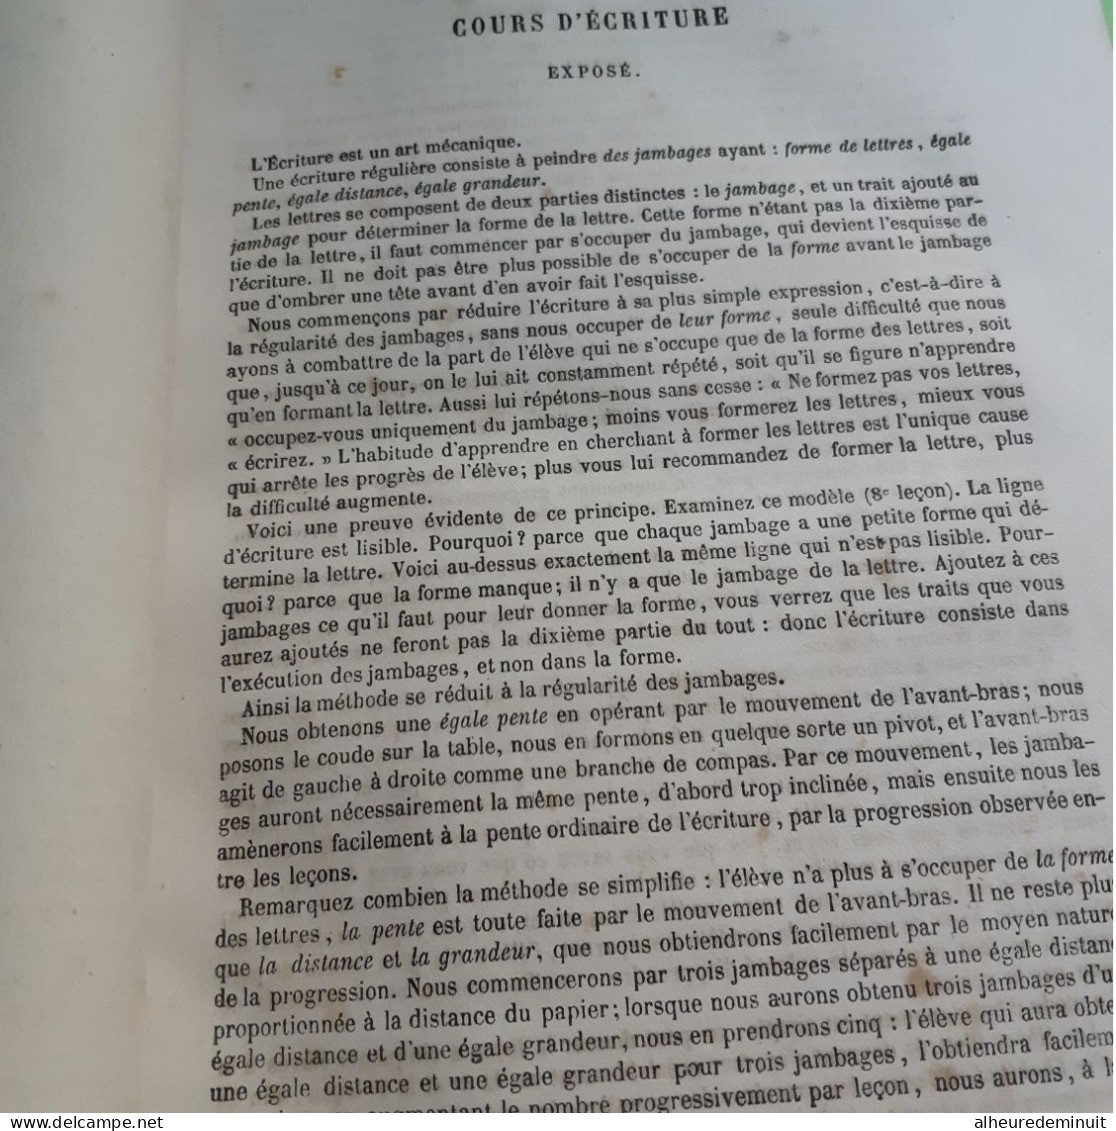 Livre ancien NOUVELLES METHODES"LECTURE ECRITURE CALCUL GRAMMAIRE GEOGRAPHIE HISTOIRE"REDU.J"1865"patronage NAPOLEON 3